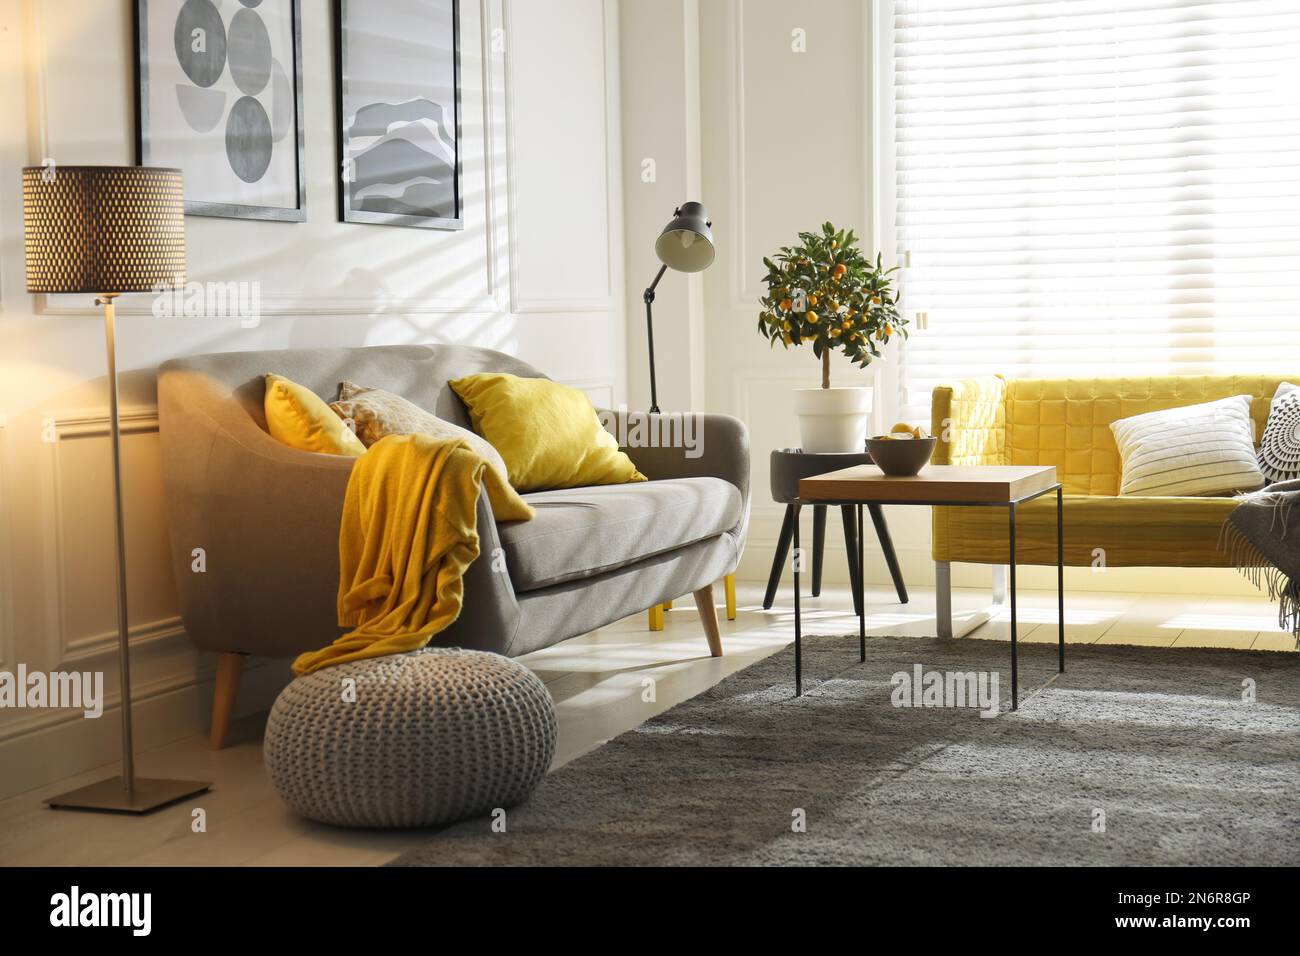 Elegante soggiorno con divani. Design degli interni nei colori grigio e giallo Foto Stock